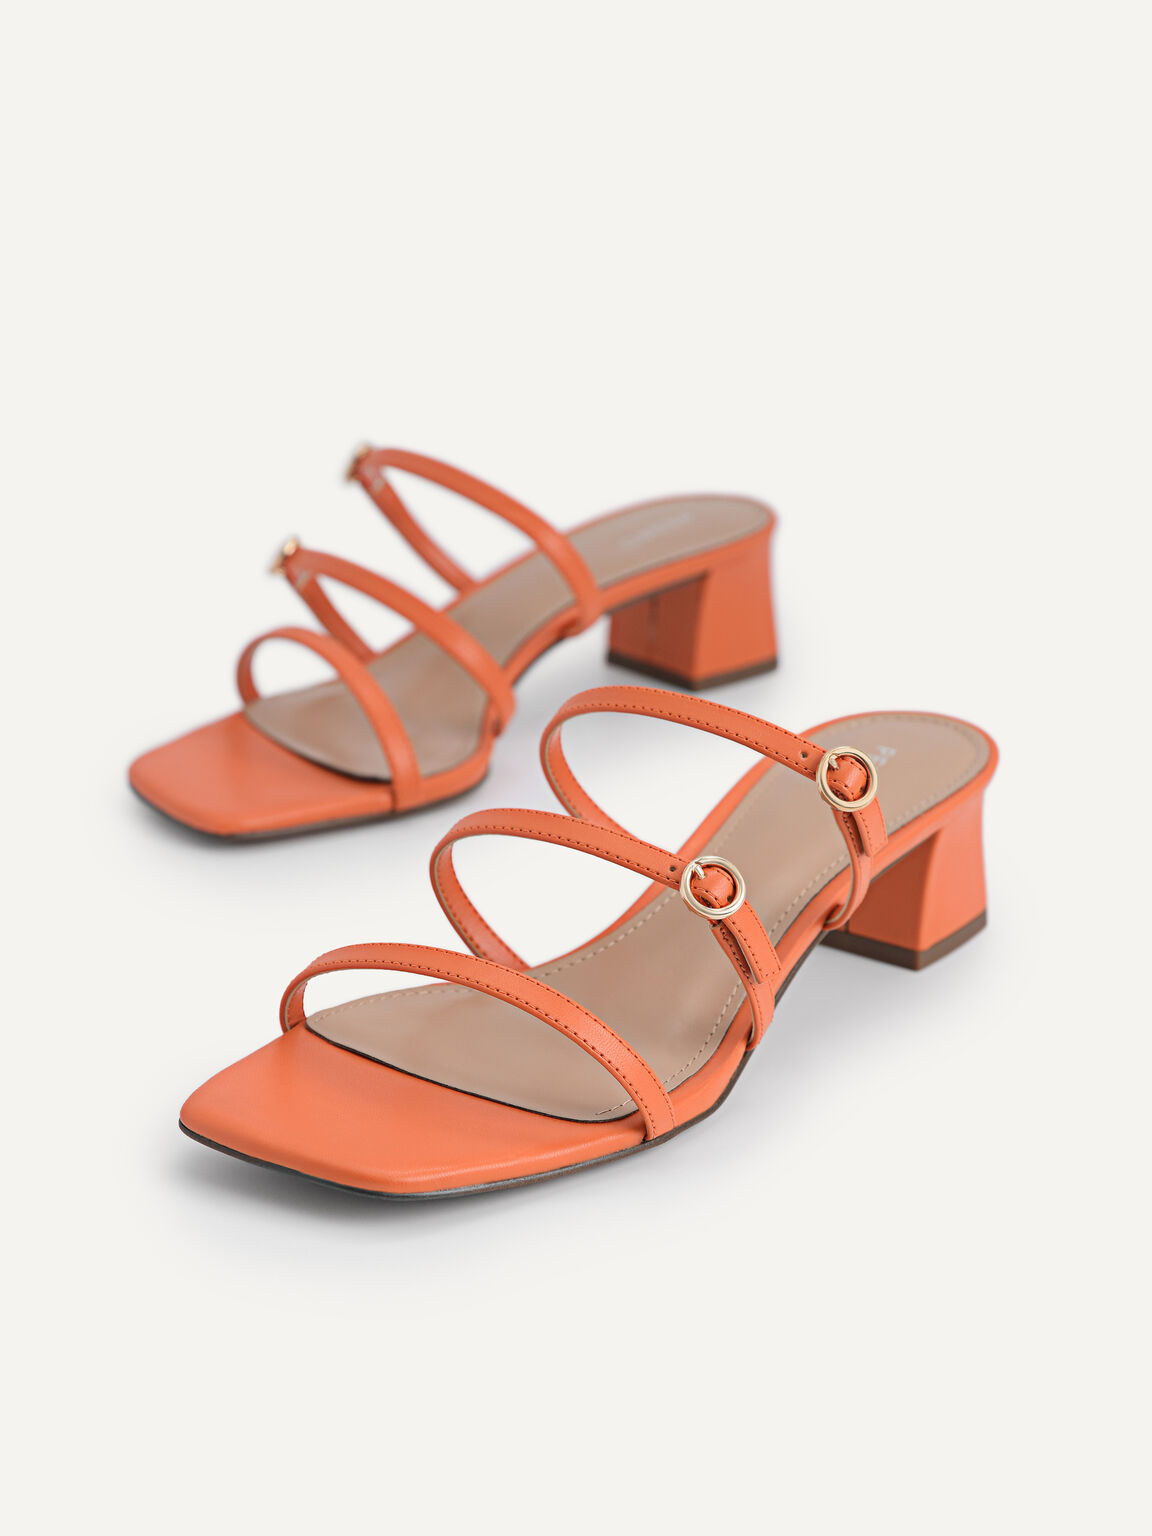 Strappy Heeled Sandals, Orange